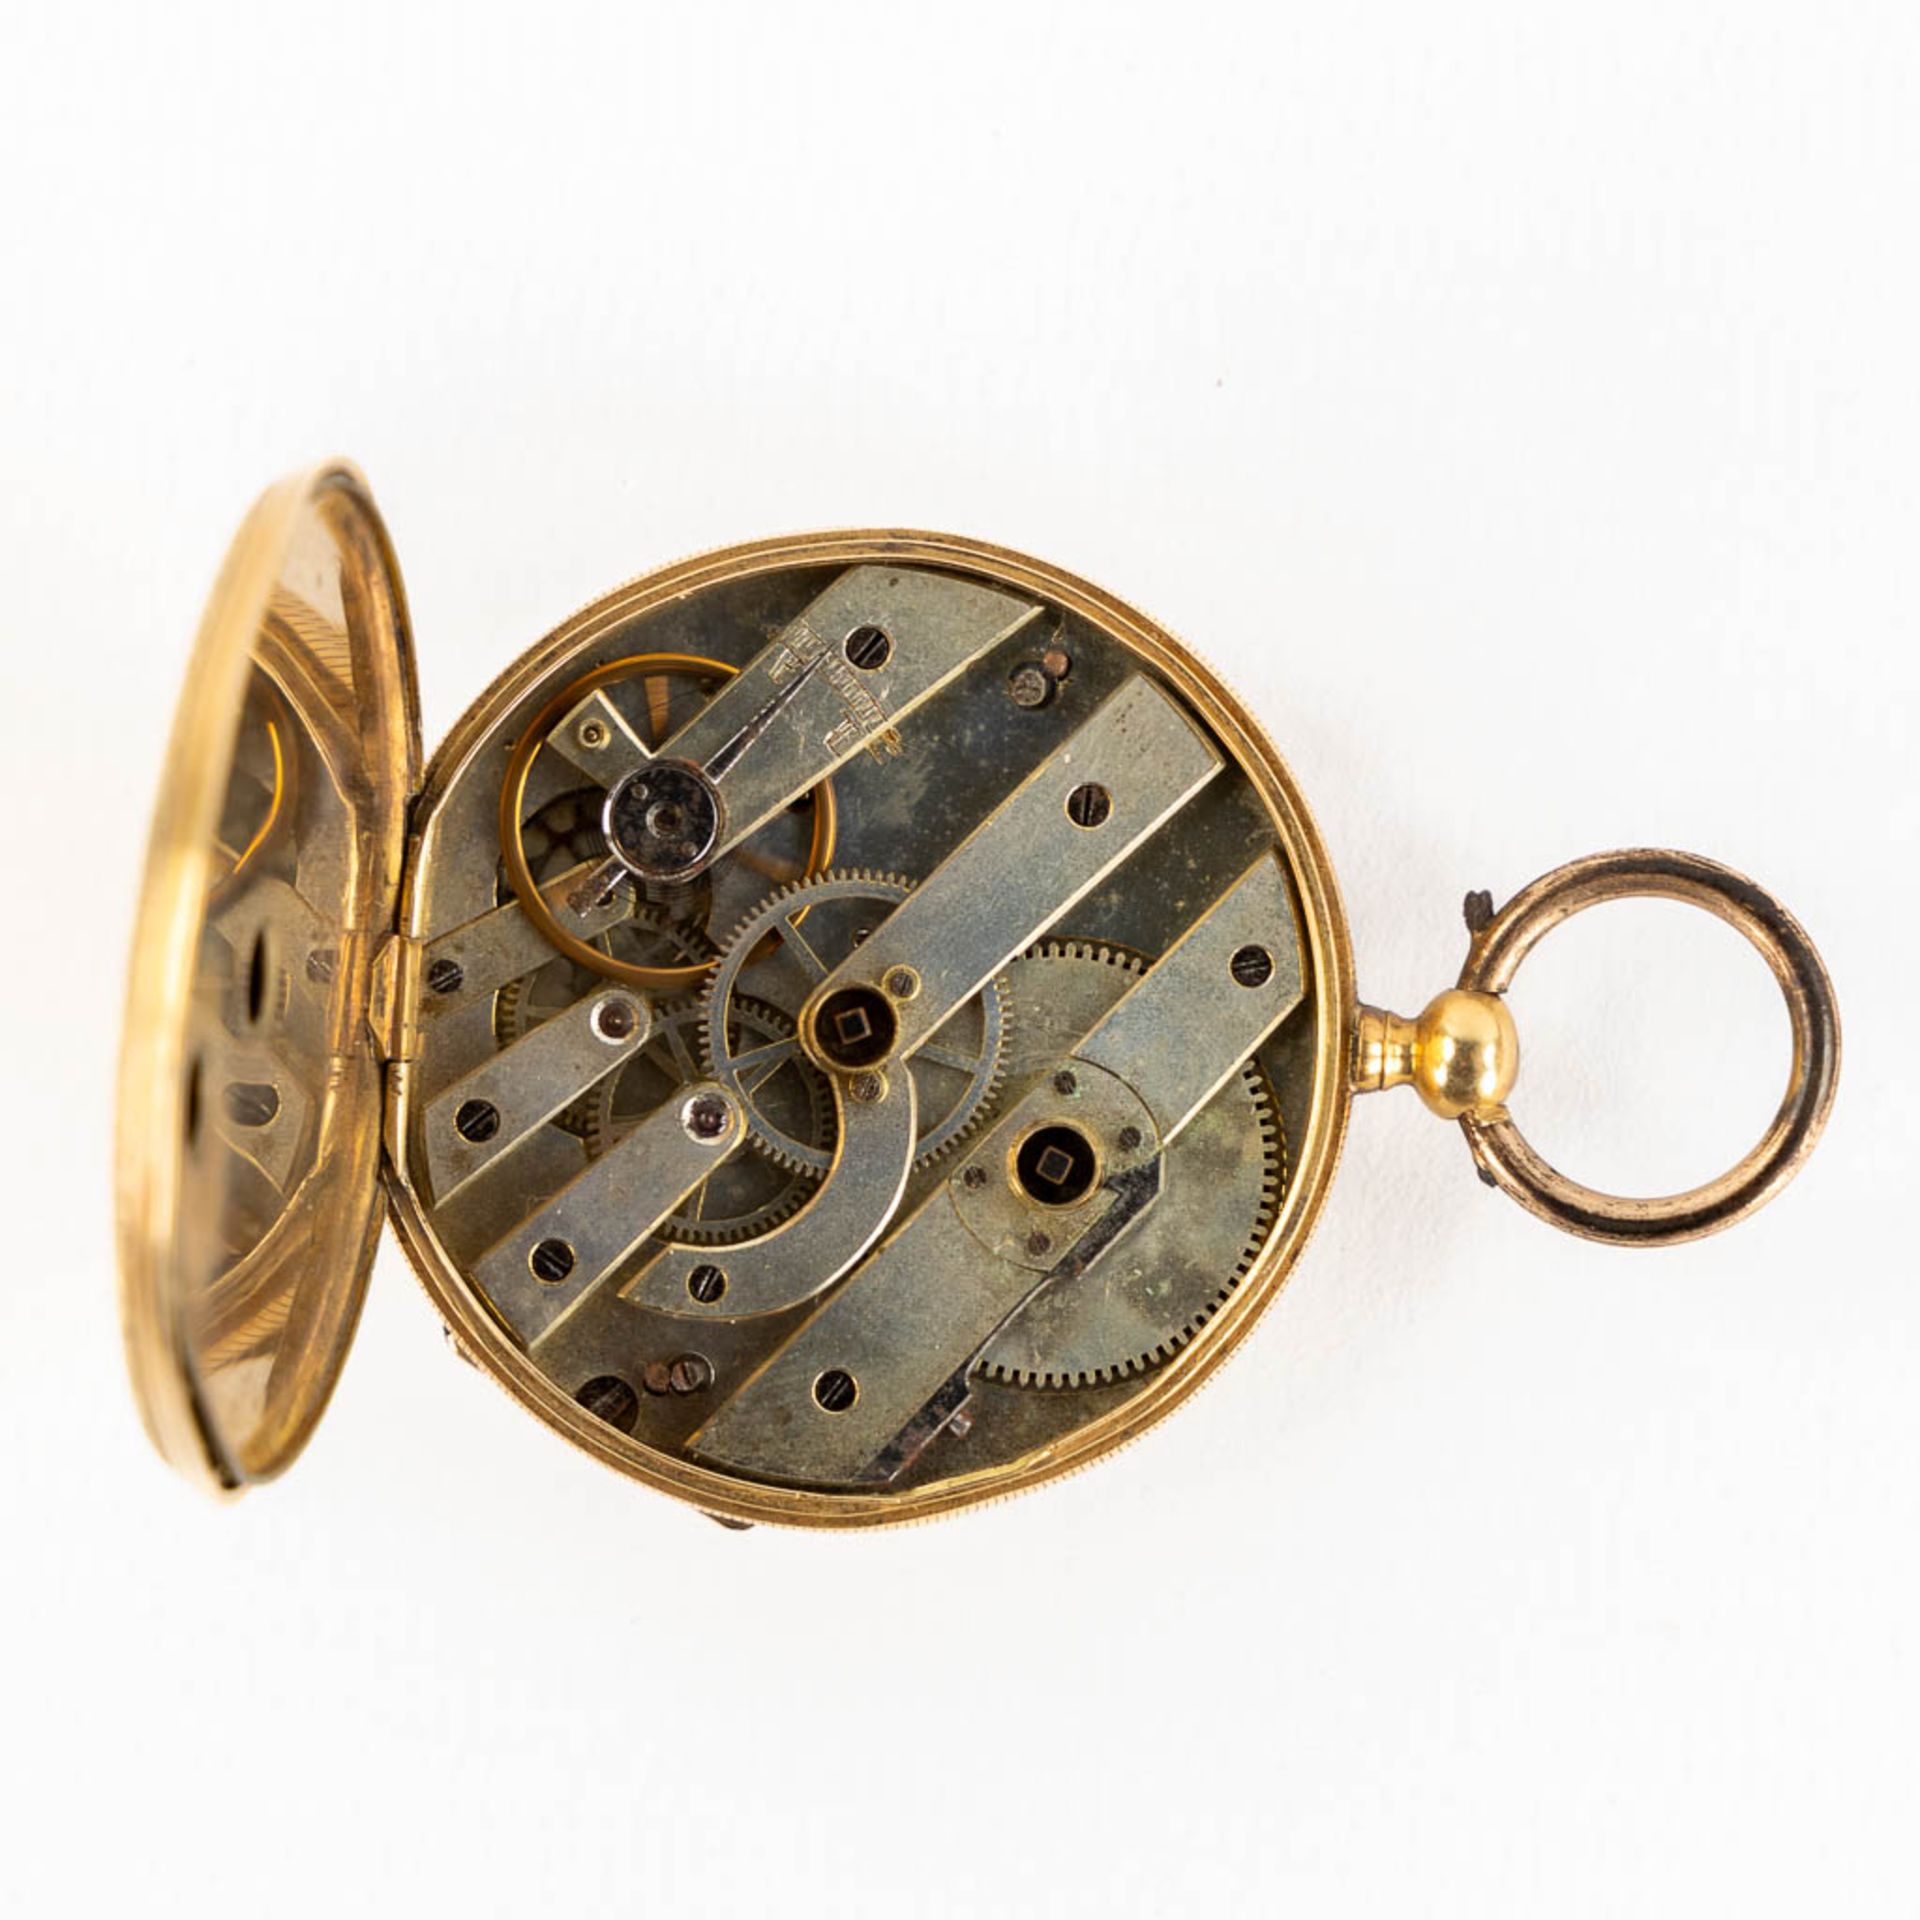 An antique pocket watch, 18kt yellow gold. Guioche image of a running horse. (W:4,3 x H:6,3 cm) - Bild 12 aus 15